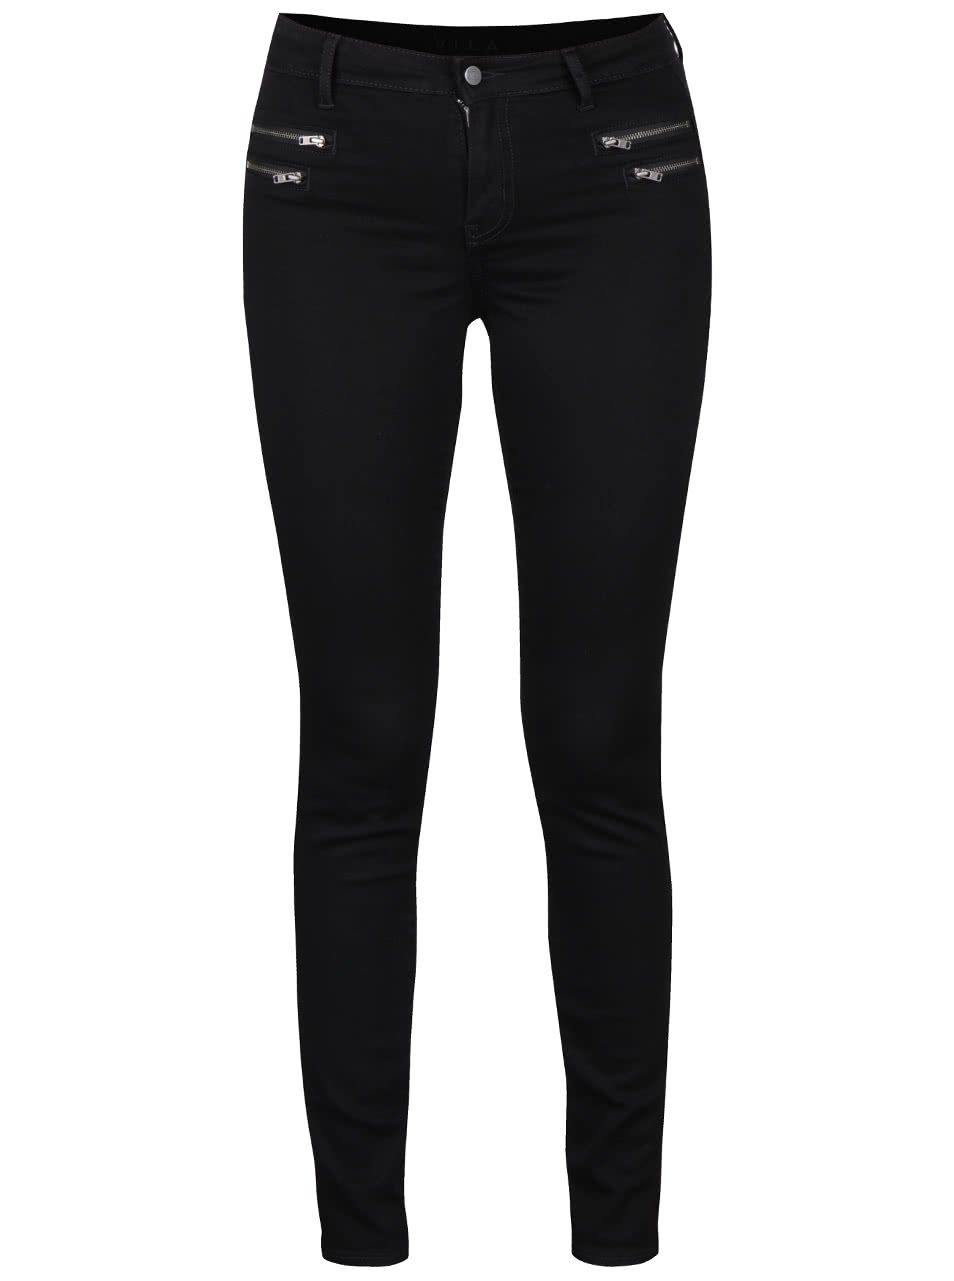 Černé elastické skinny kalhoty s ozdobnými zipy VILA Commit